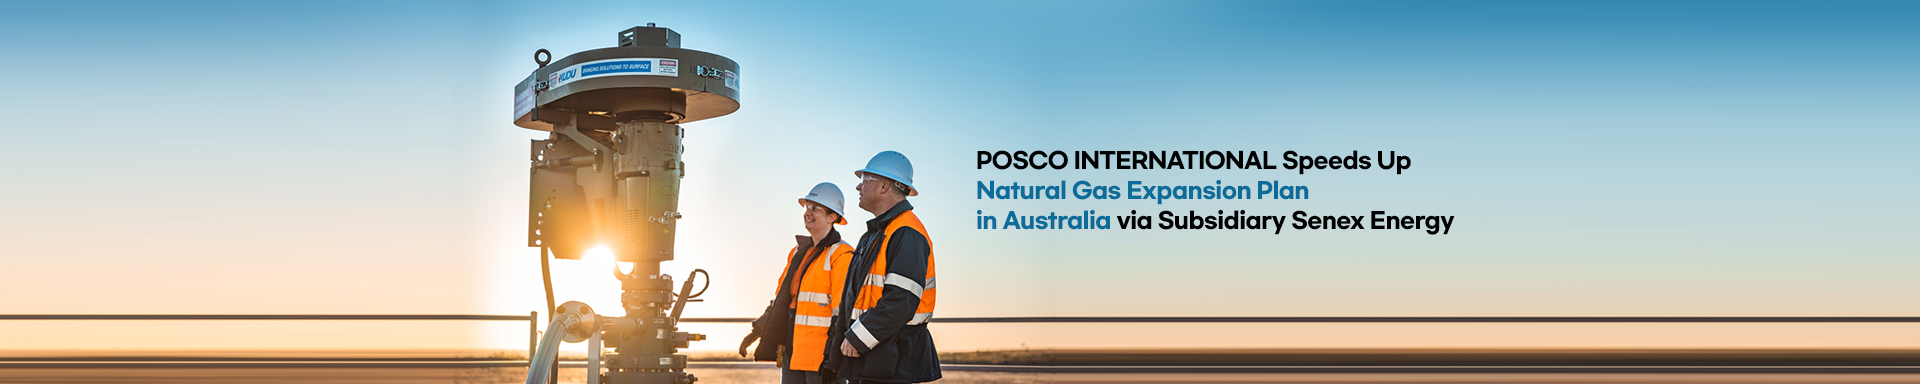 POSCO INTERNATIONAL Speeds Up Natural Gas Expansion Plan in Australia via Subsidiary Senex Energy